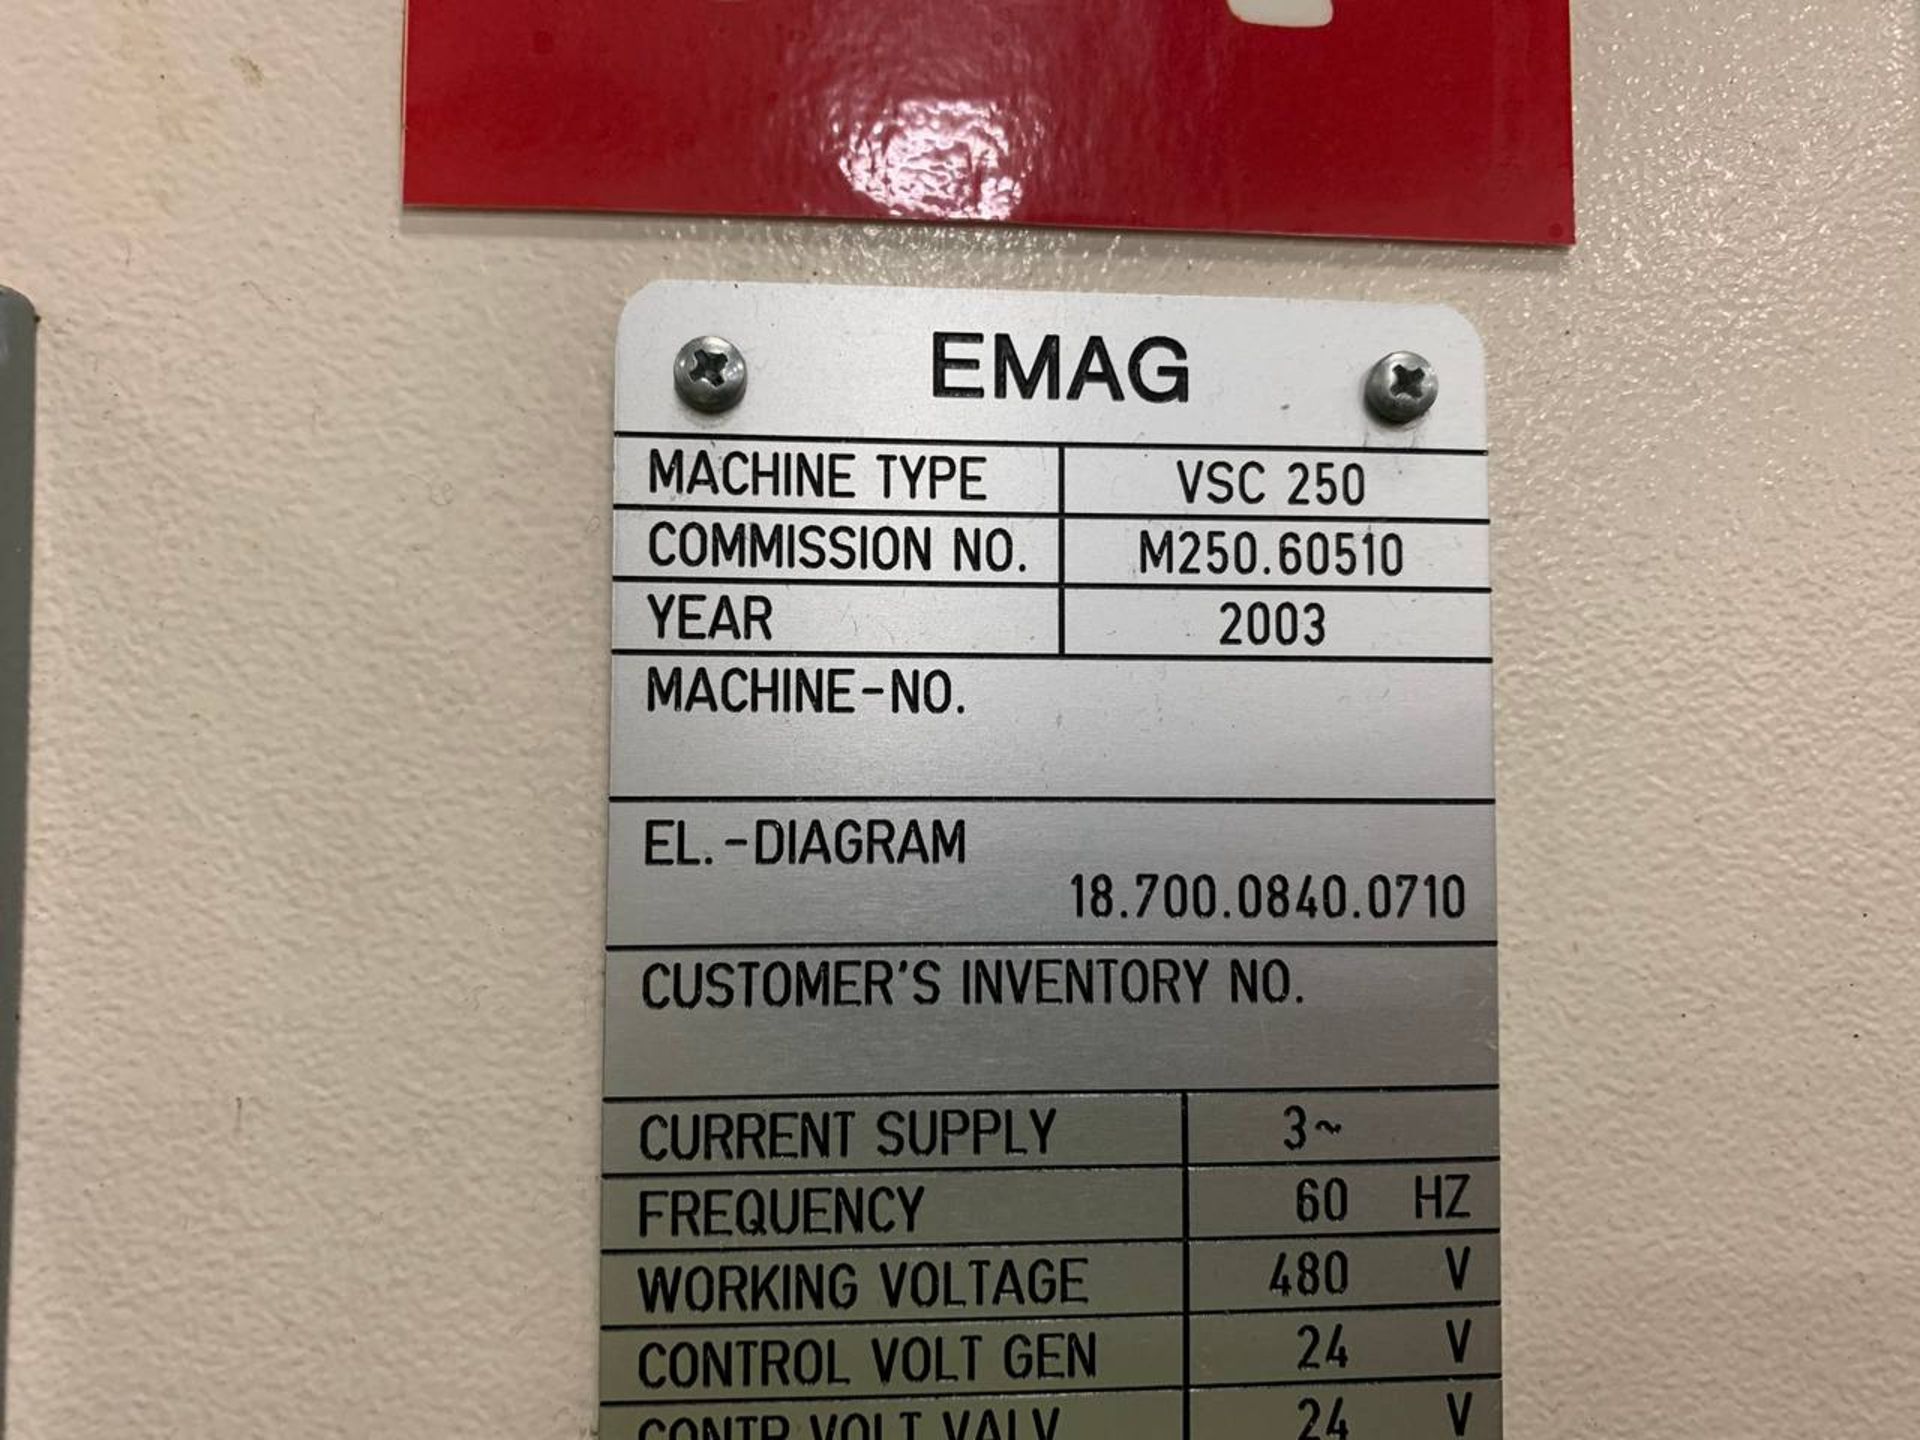 2003 Emag VSC 250 CNC Lathe - Image 2 of 2